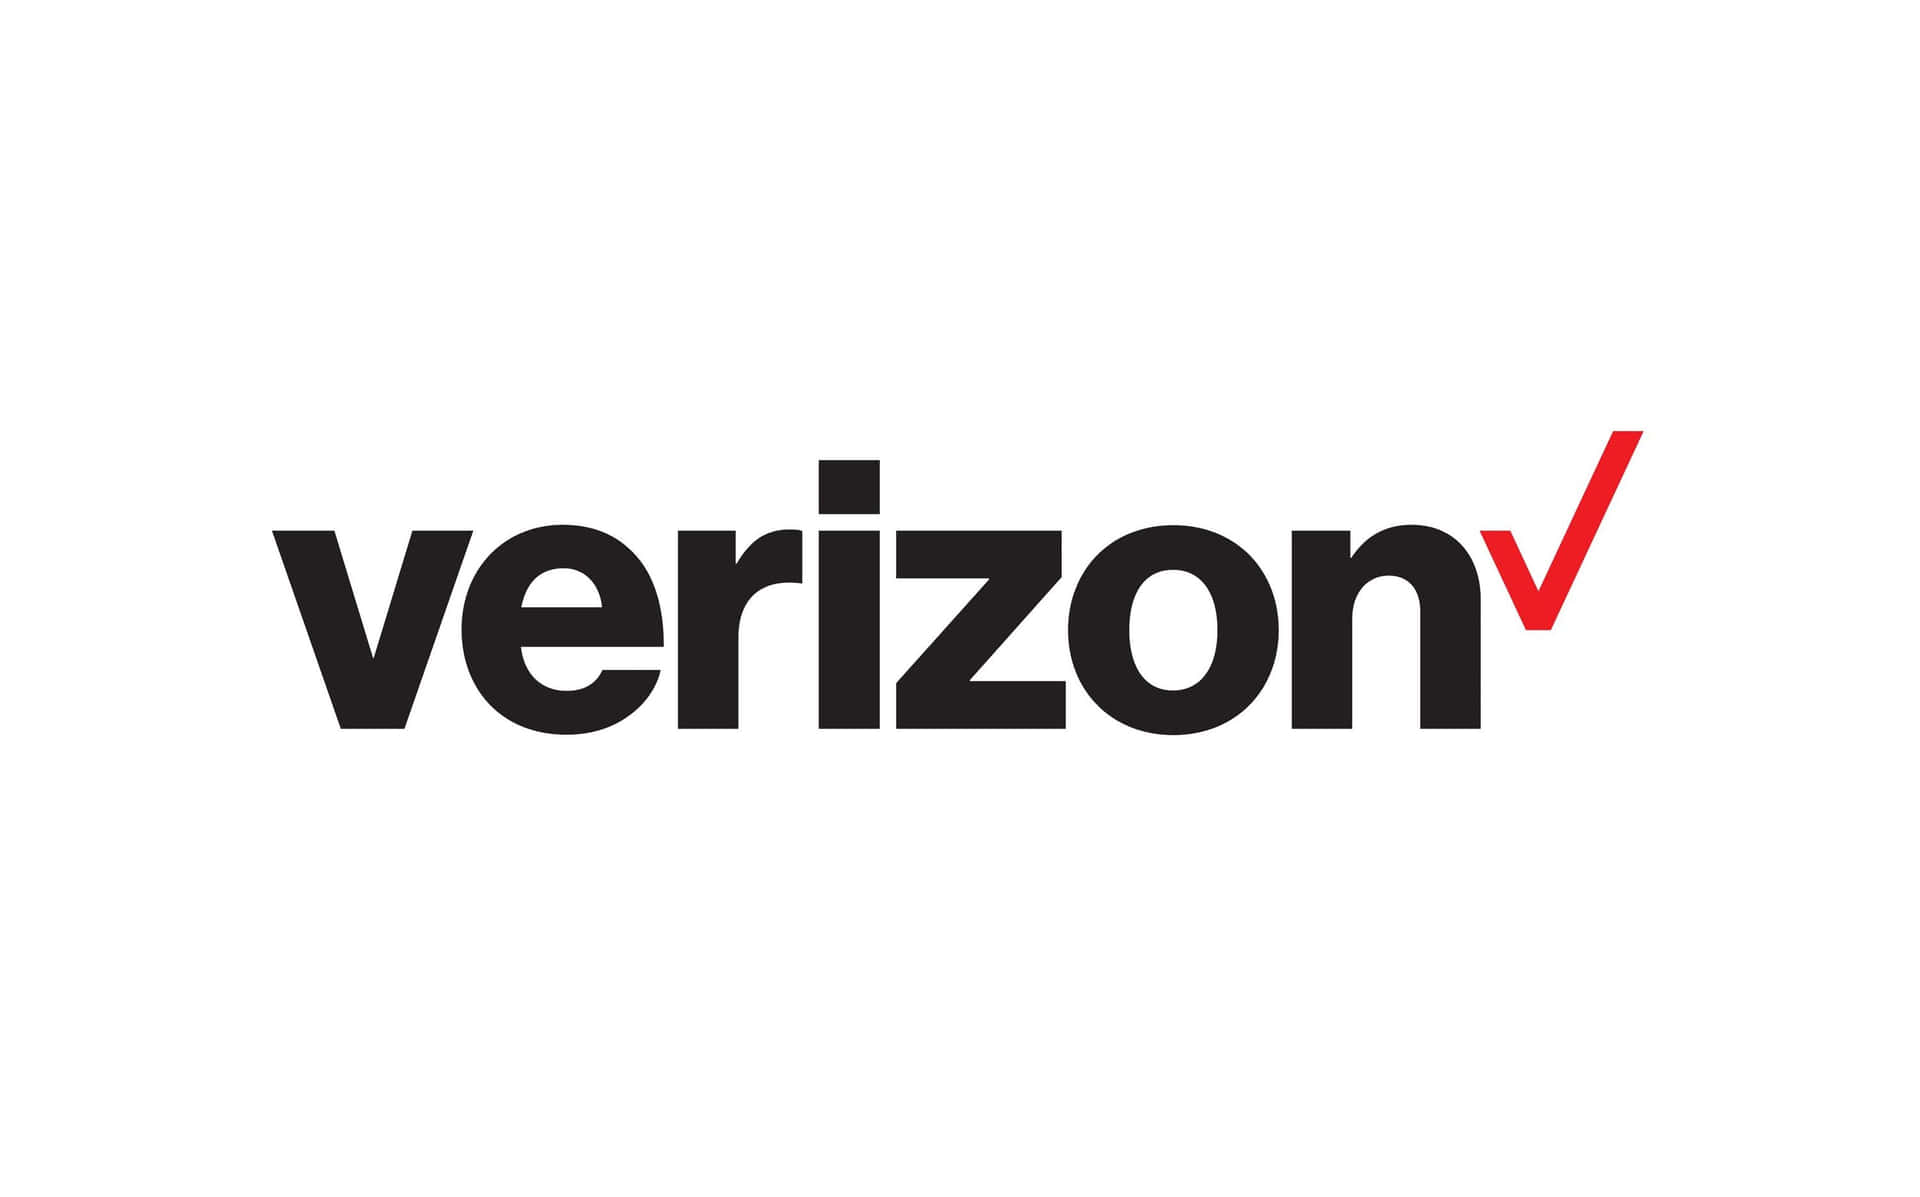 Verizonsv-logo På En Hvid Baggrund.